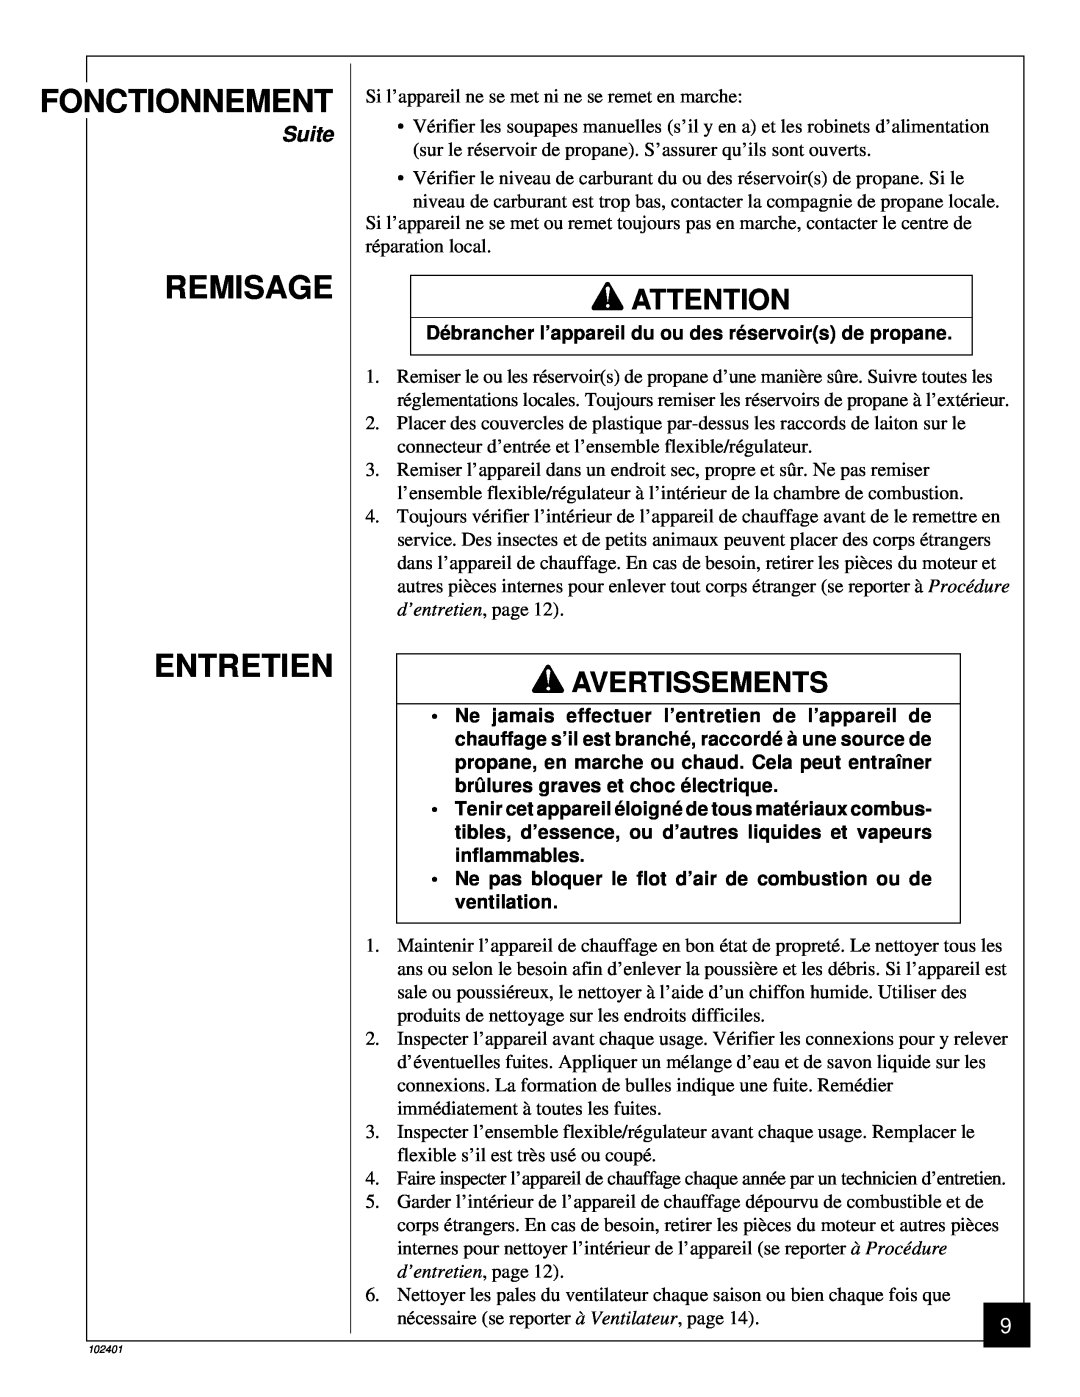 Desa RCLP50A owner manual Remisage Entretien, Fonctionnement, Avertissements, Suite 